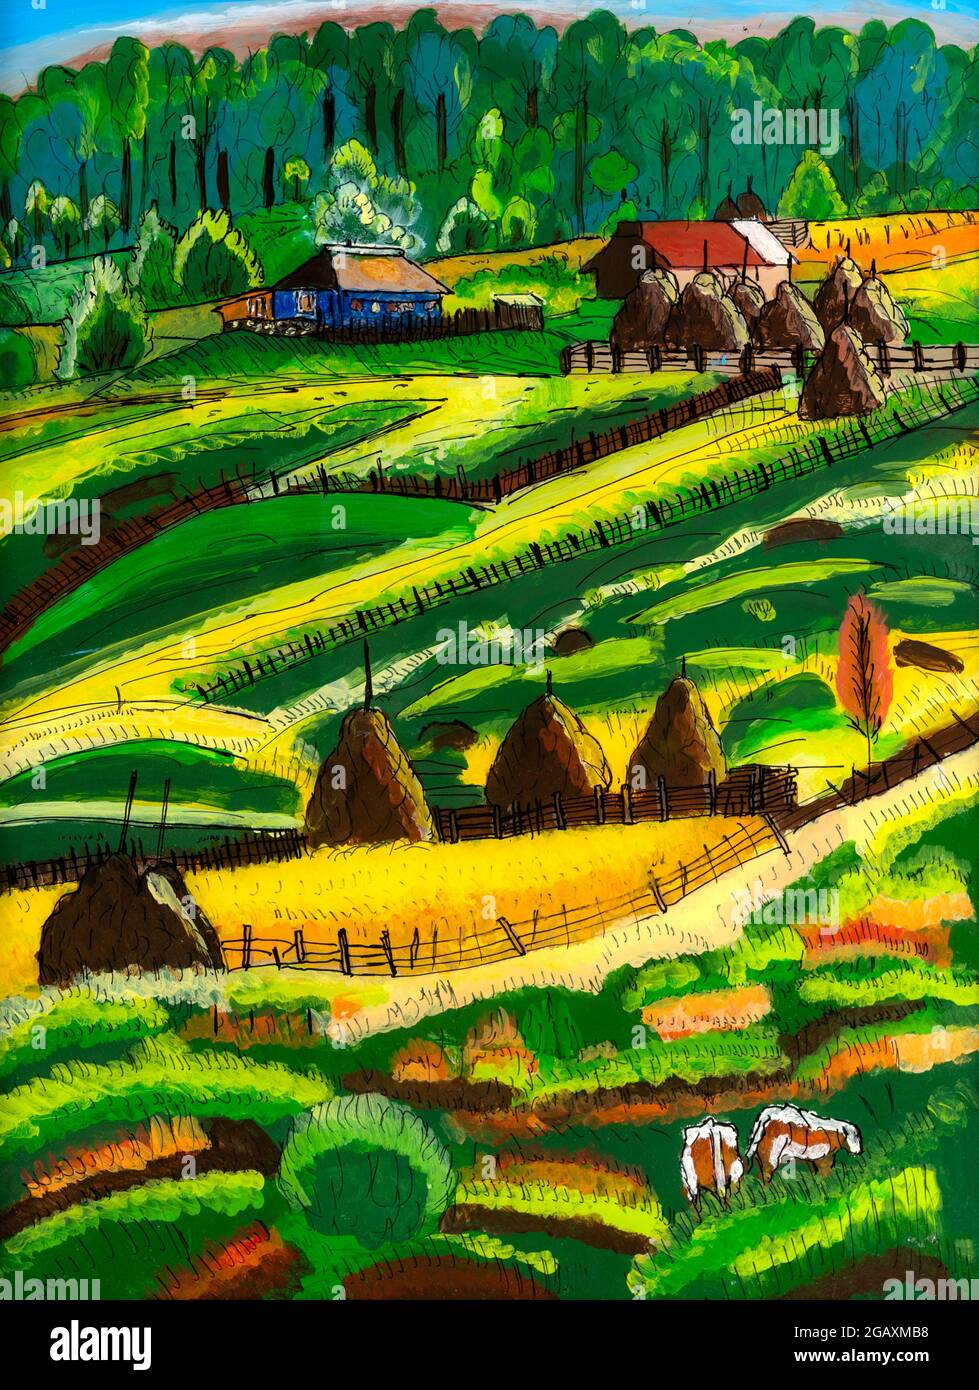 Peinture en verre inversé d'une ferme de campagne dans la région de Maramures en Roumanie. Peinture colorée naïve de paysage vallonné. Banque D'Images